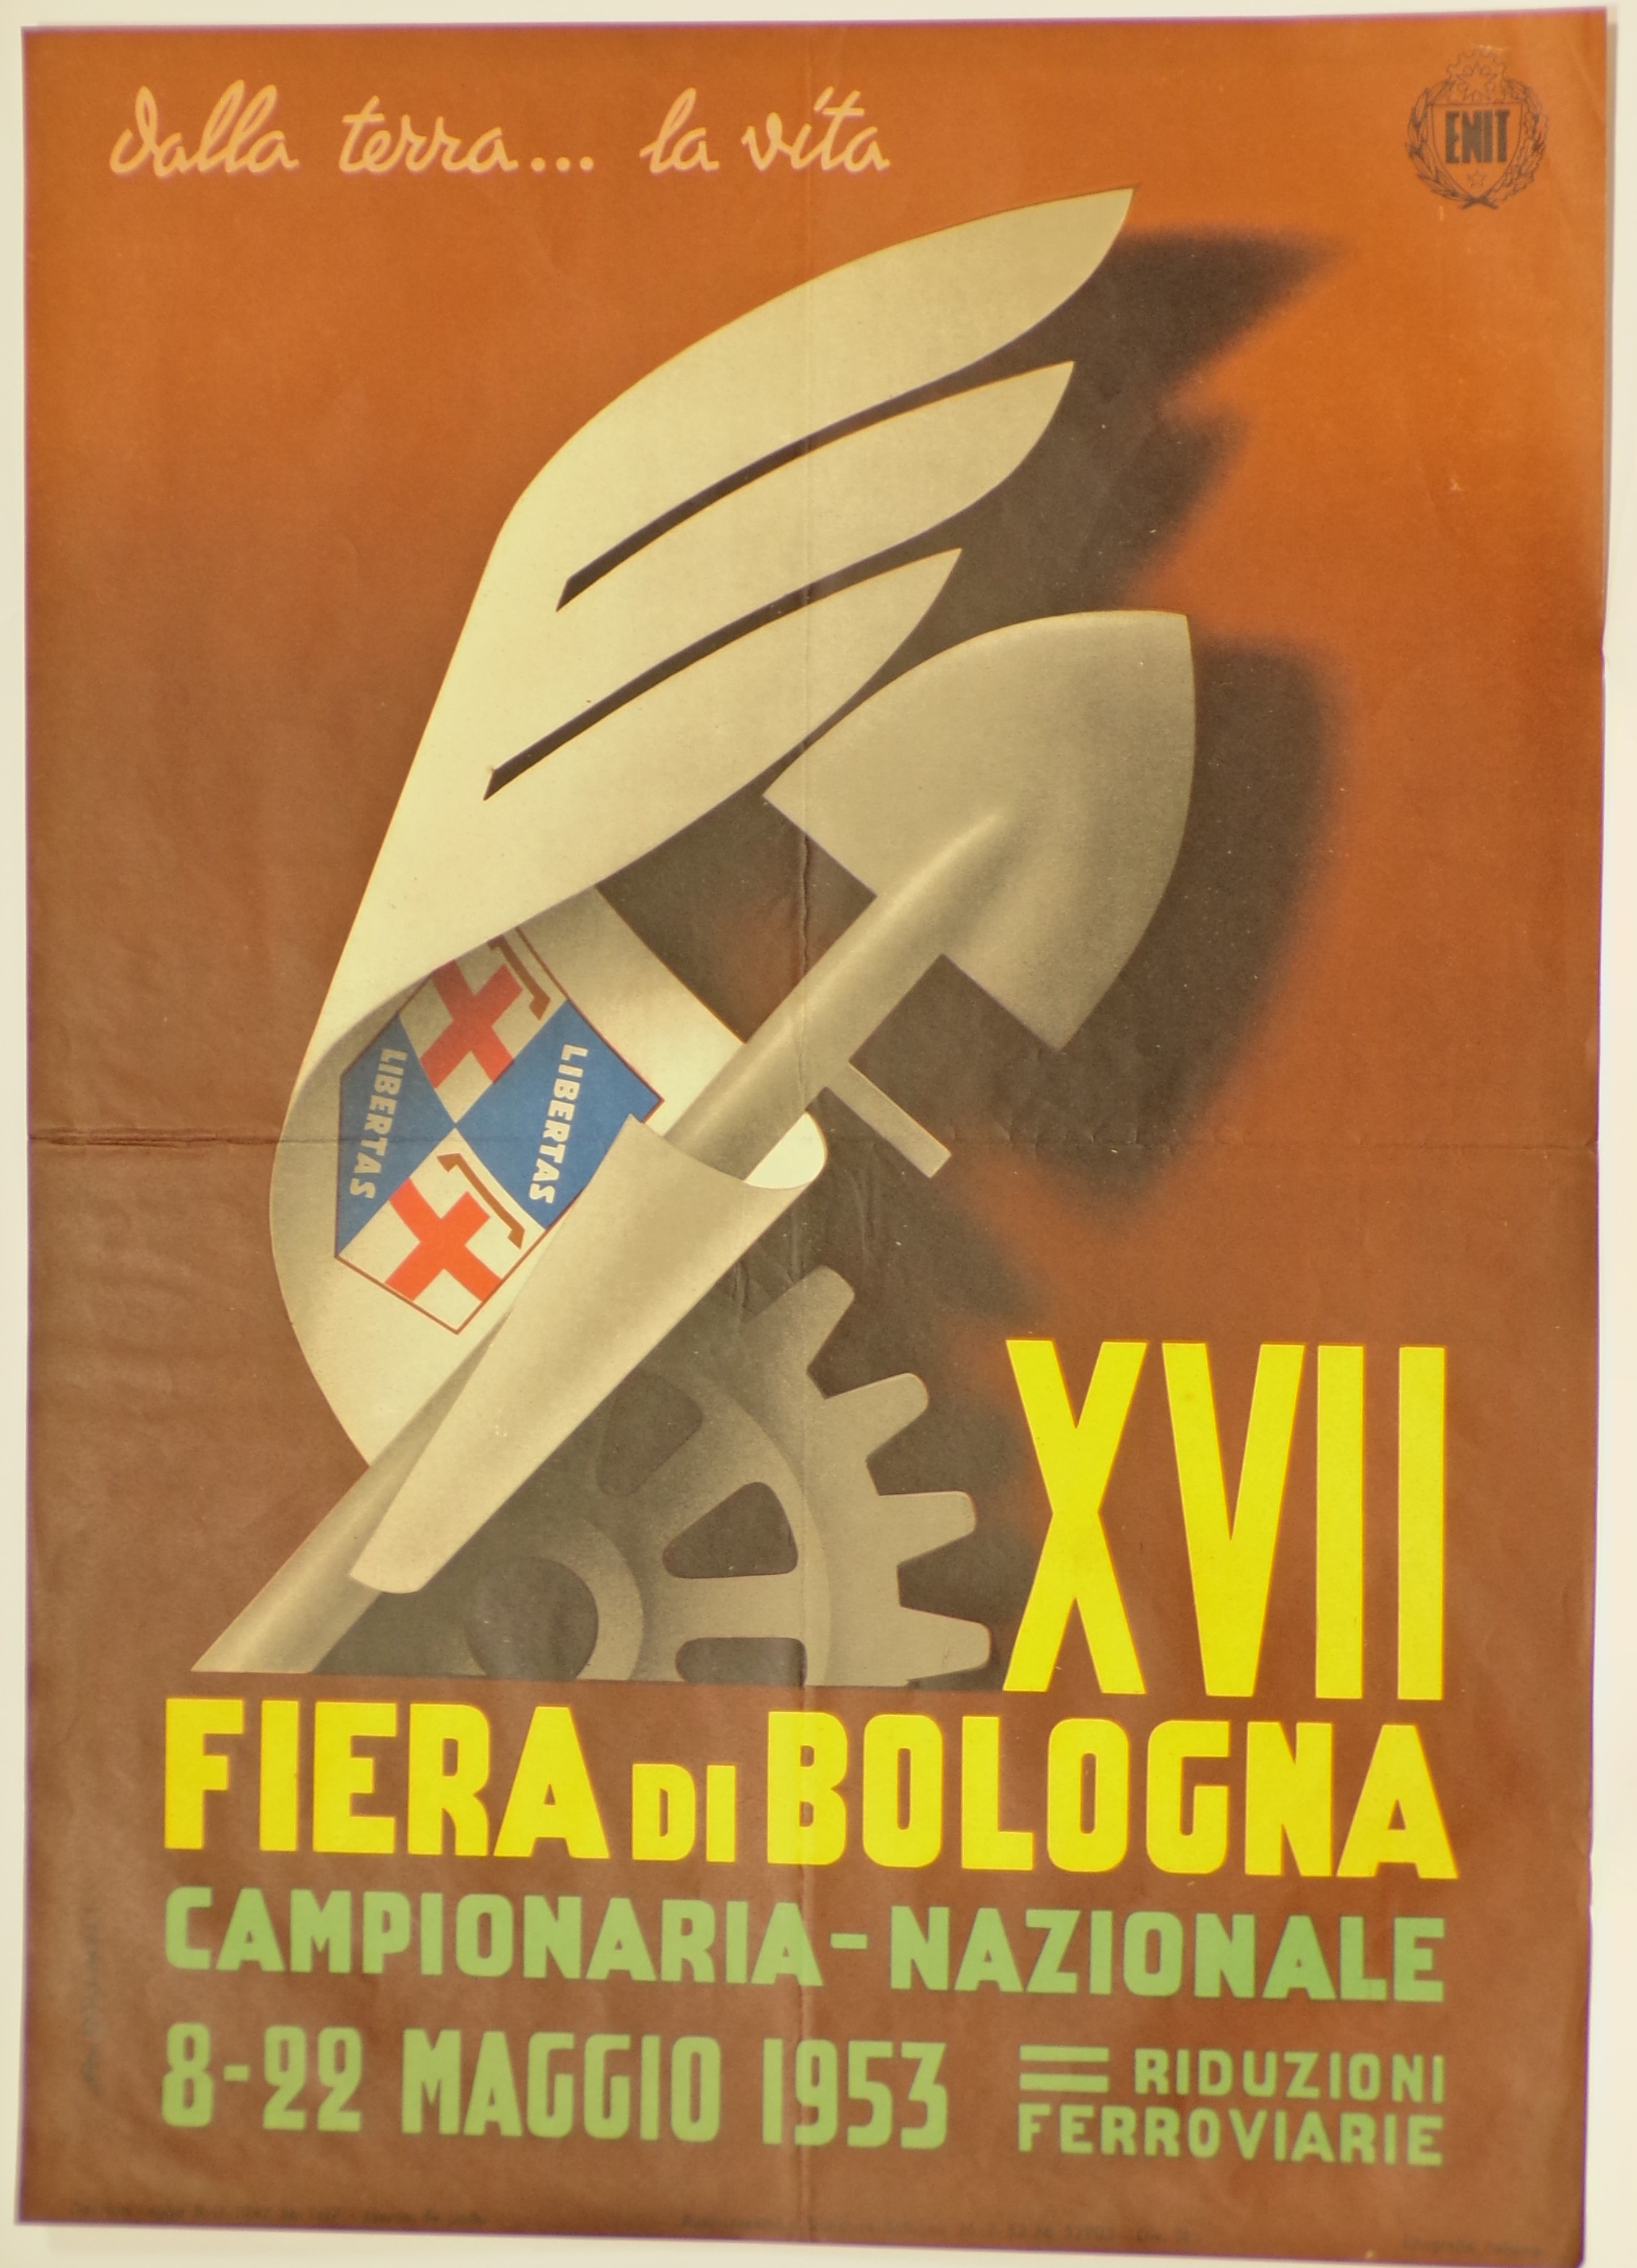 XVII fiera di Bologna, Ruota dentata, badle e cartiglio terminante ad ala con stemma del comune di Bologna sovraimpresso (locandina) di Adriani Emidio - ambito bolognese (metà XX)